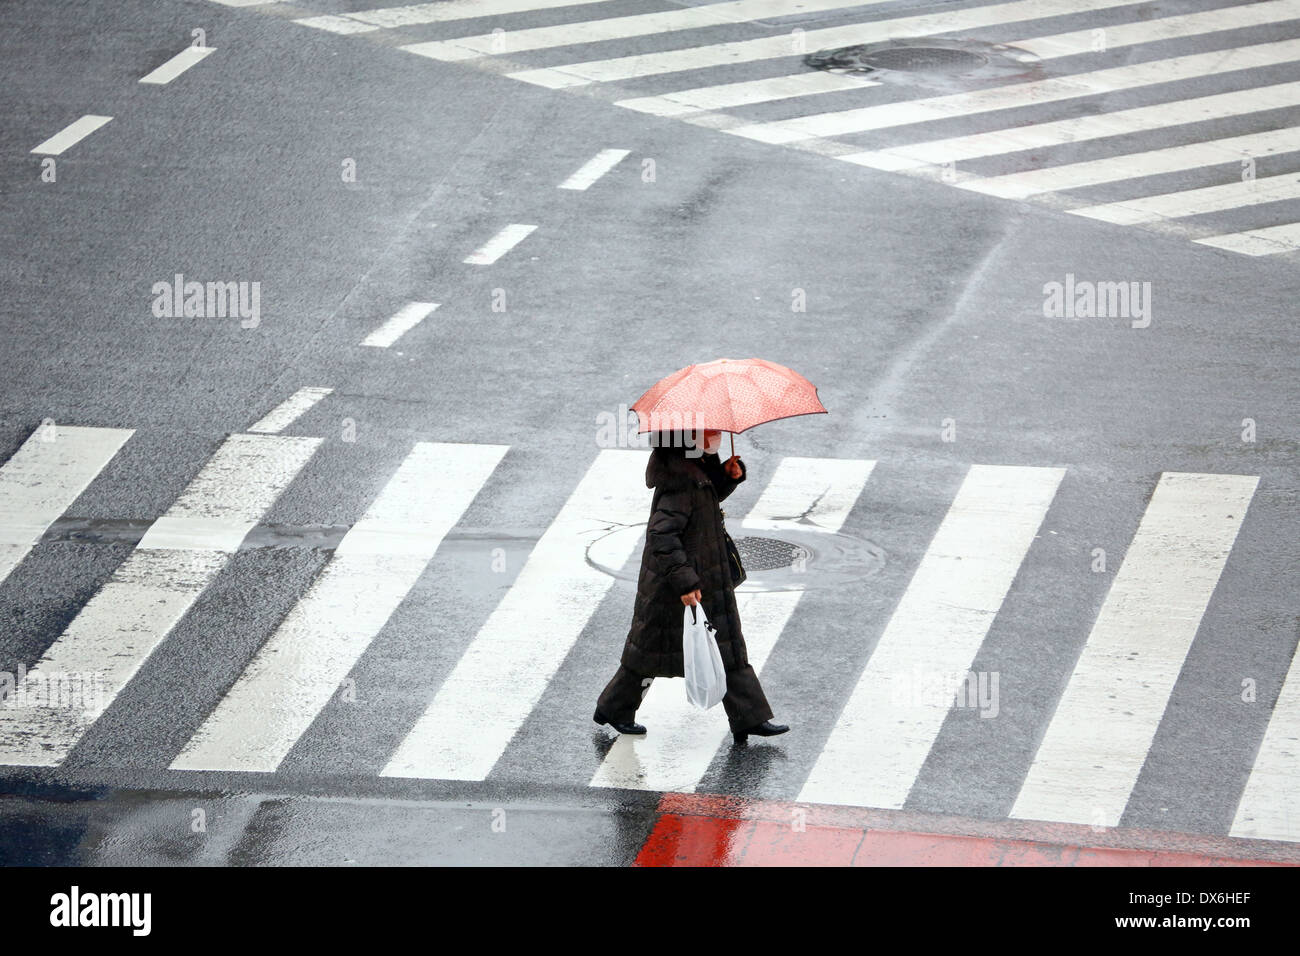 Menschen, die Sonnenschirme in den Regen zu Fuß über den Fussgängerstreifen in Shibuya, Tokyo, Japan Stockfoto